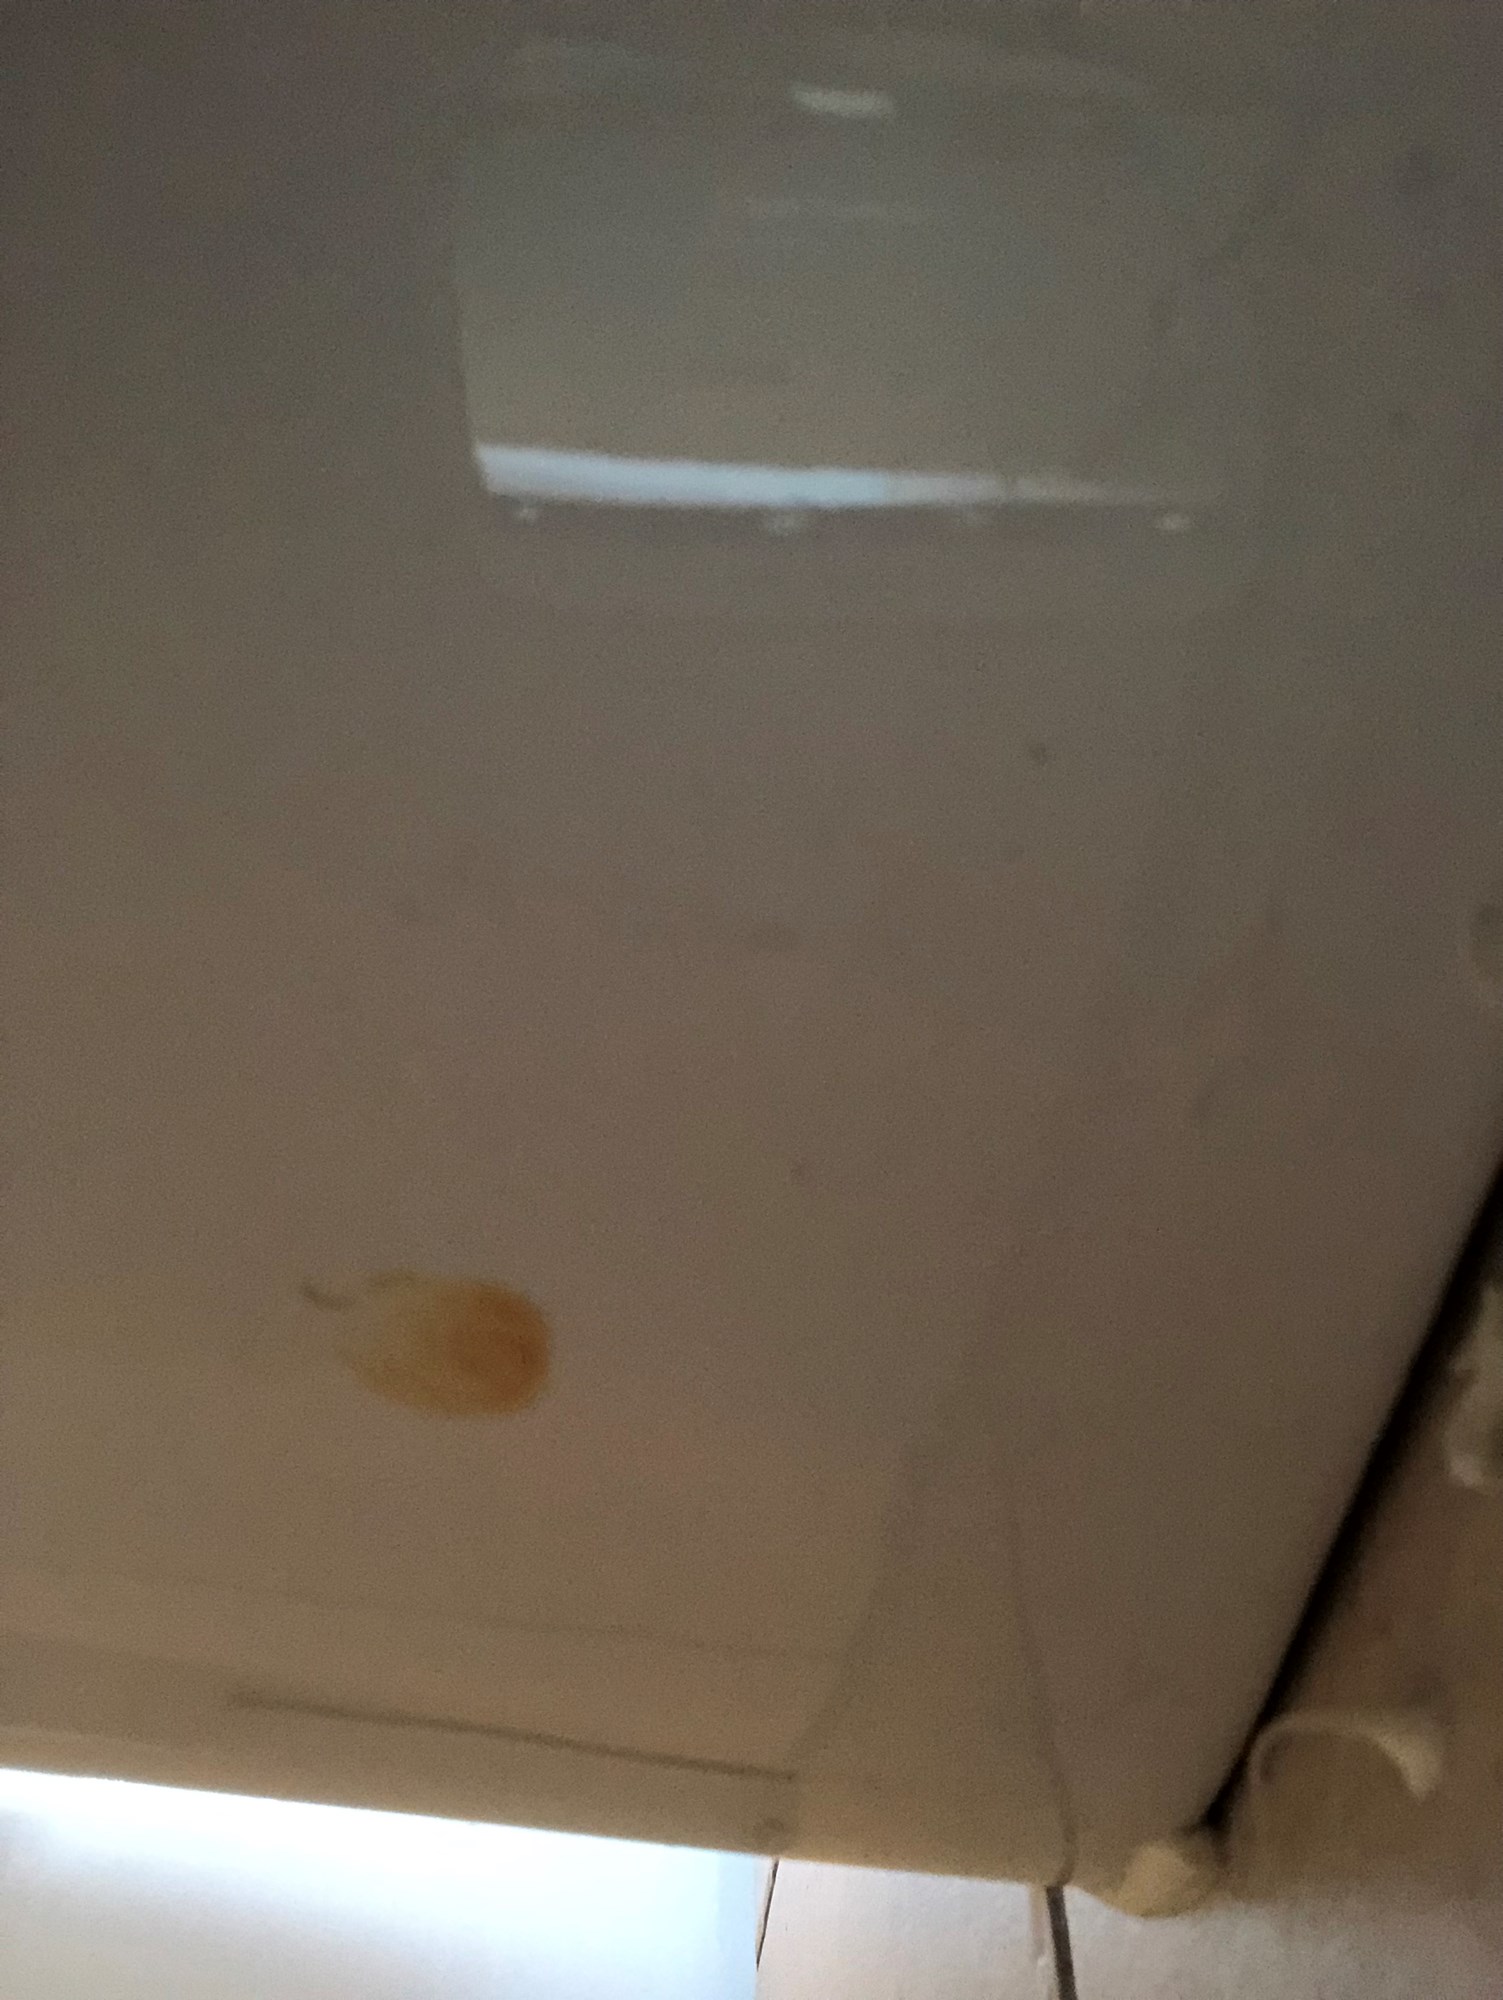 Toalettet drypper vann ned på gulvet under skåla? - 162FE497-DB43-494C-ABA4-8ED8D13F3748.jpeg - Lissi